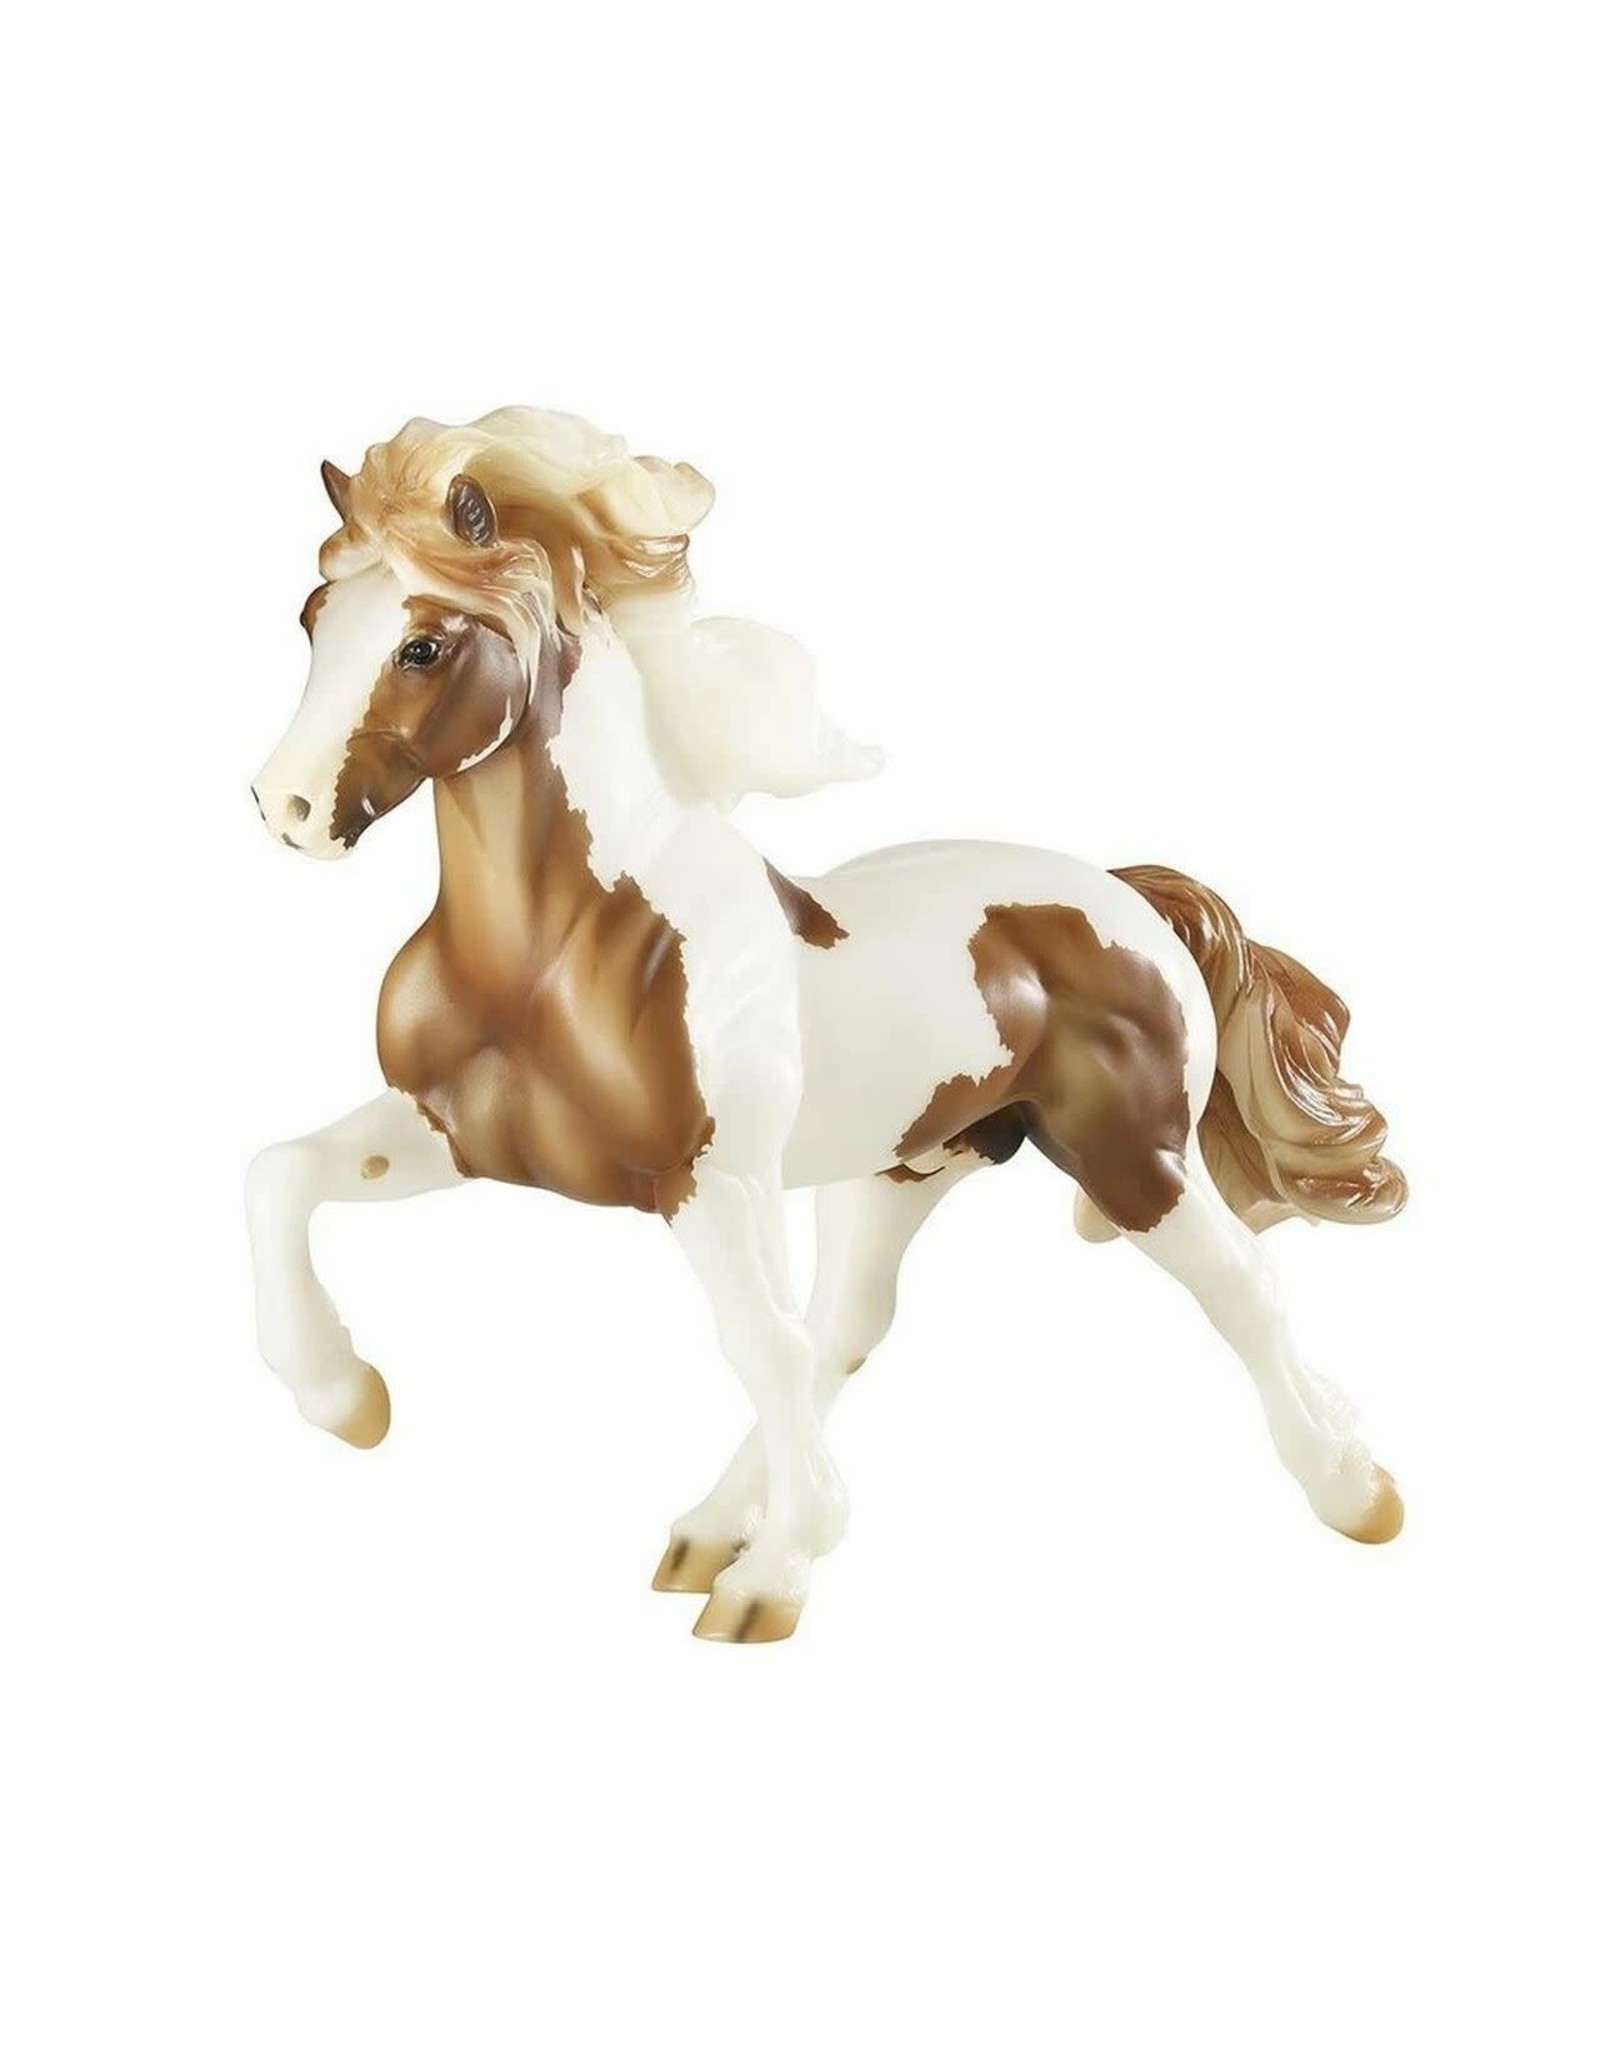 Breyer Spordur Fra' Bergi 1844 Model Horse